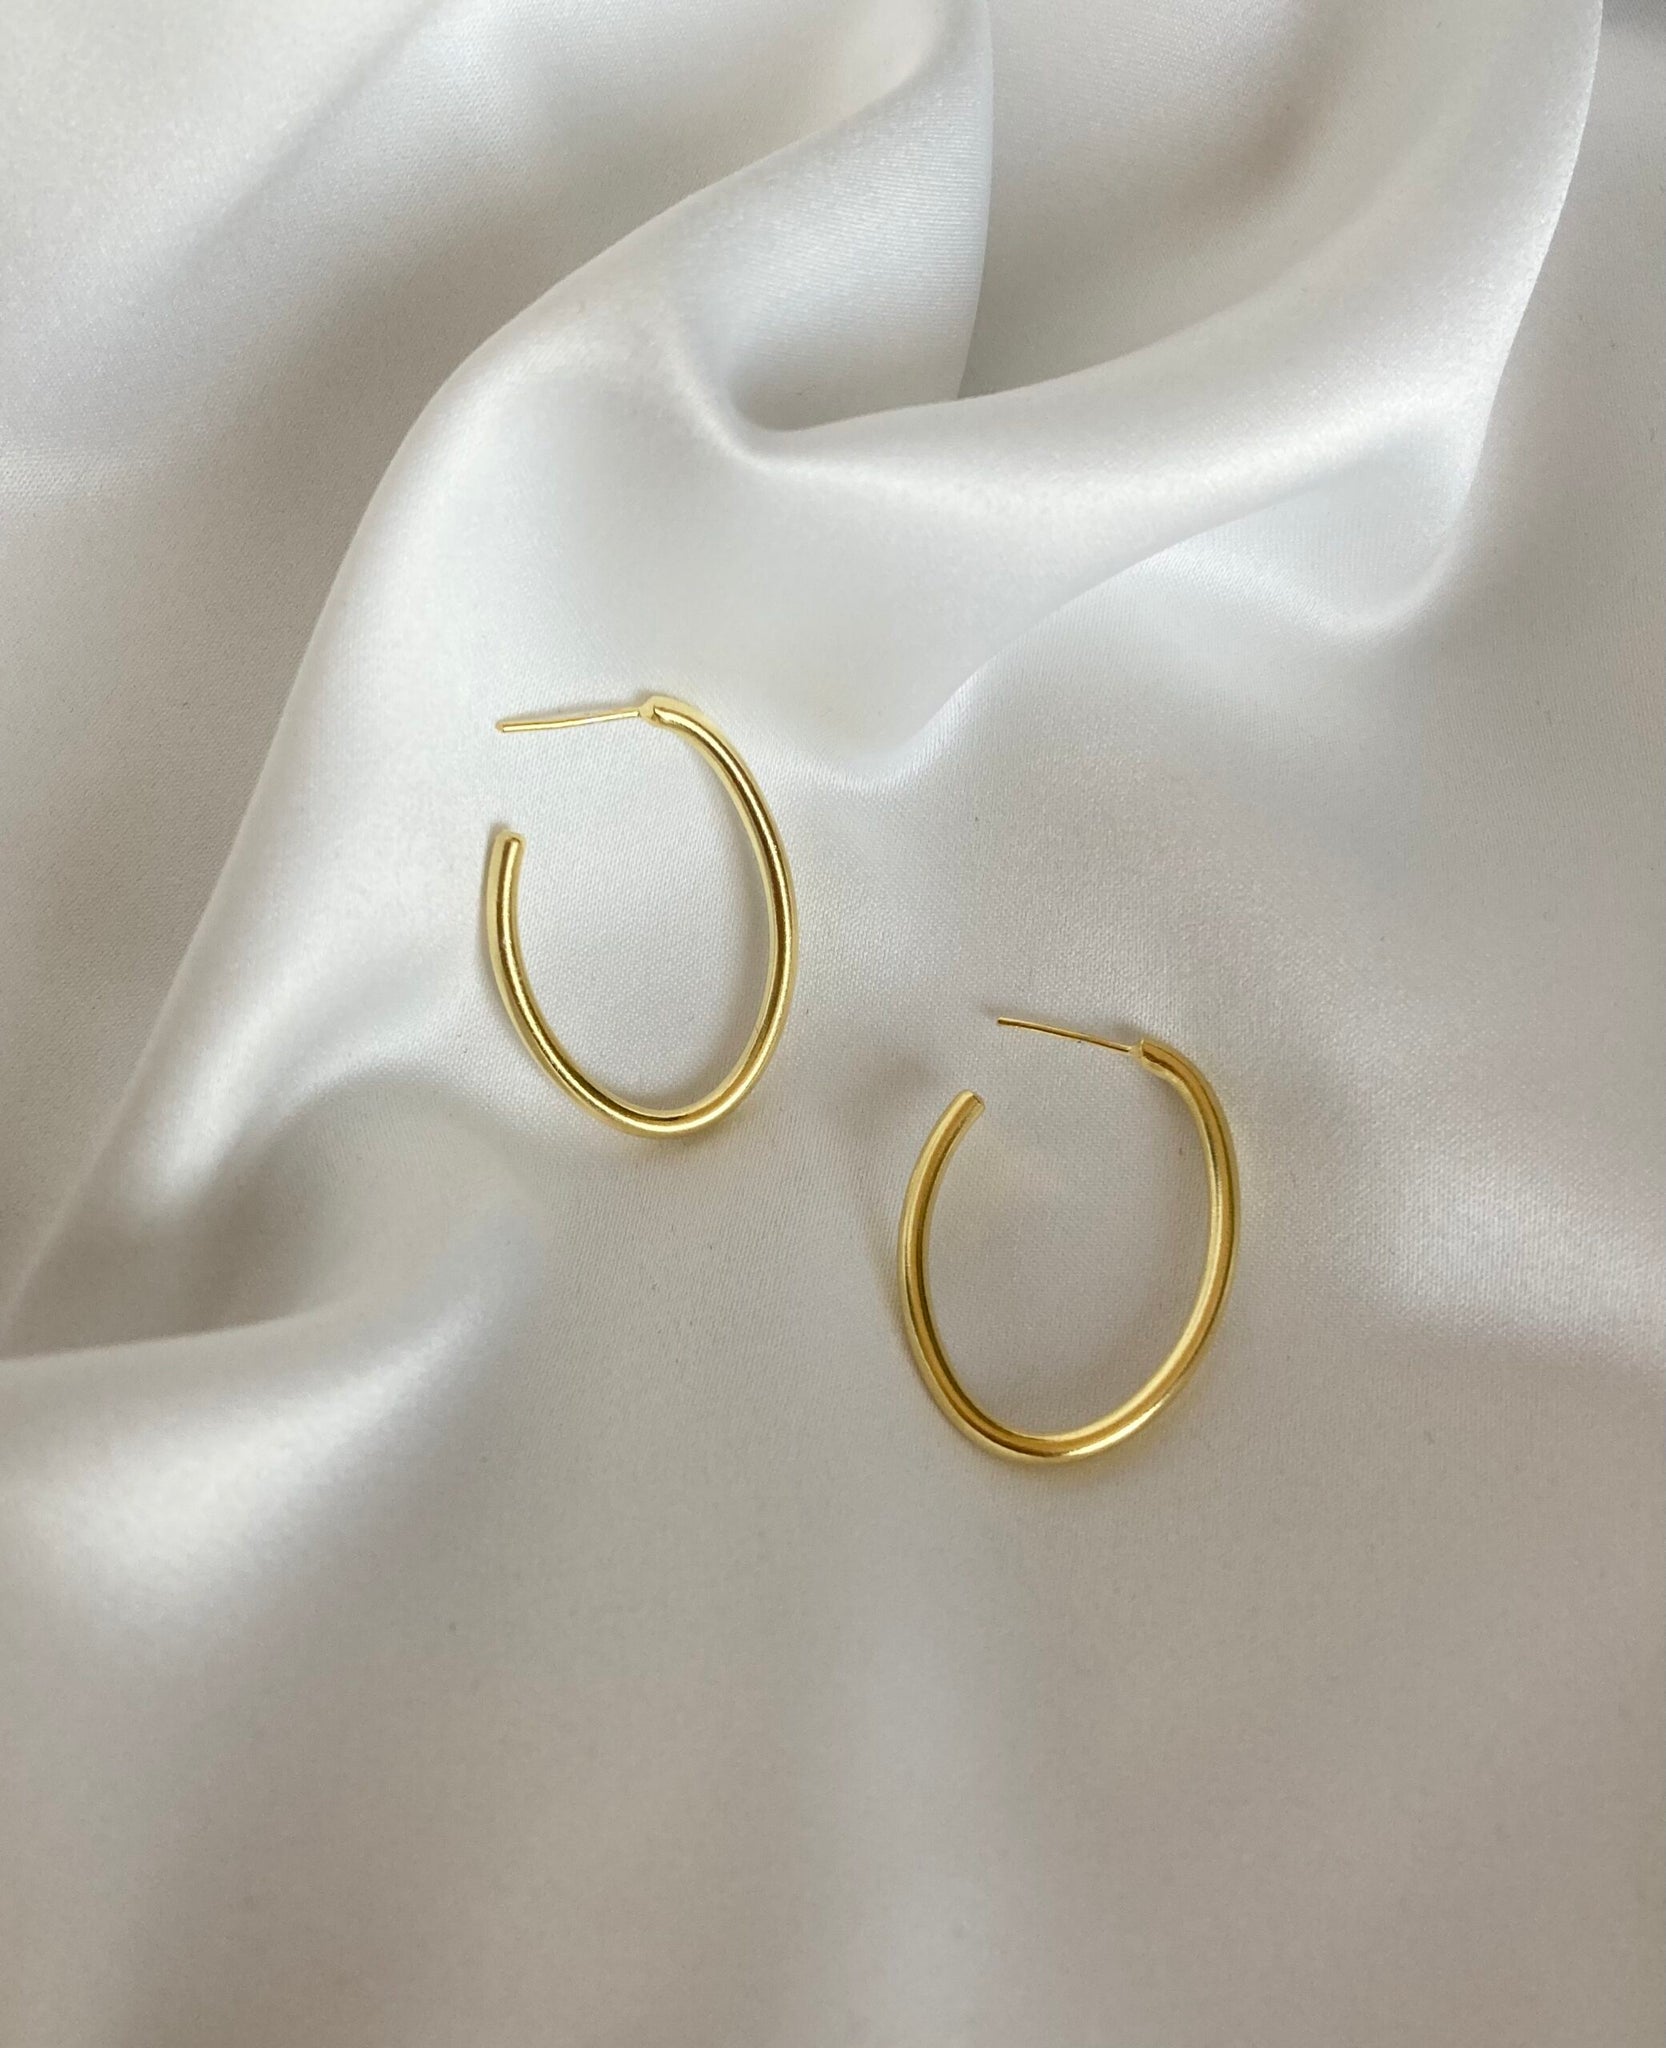 Oval hoops earrings